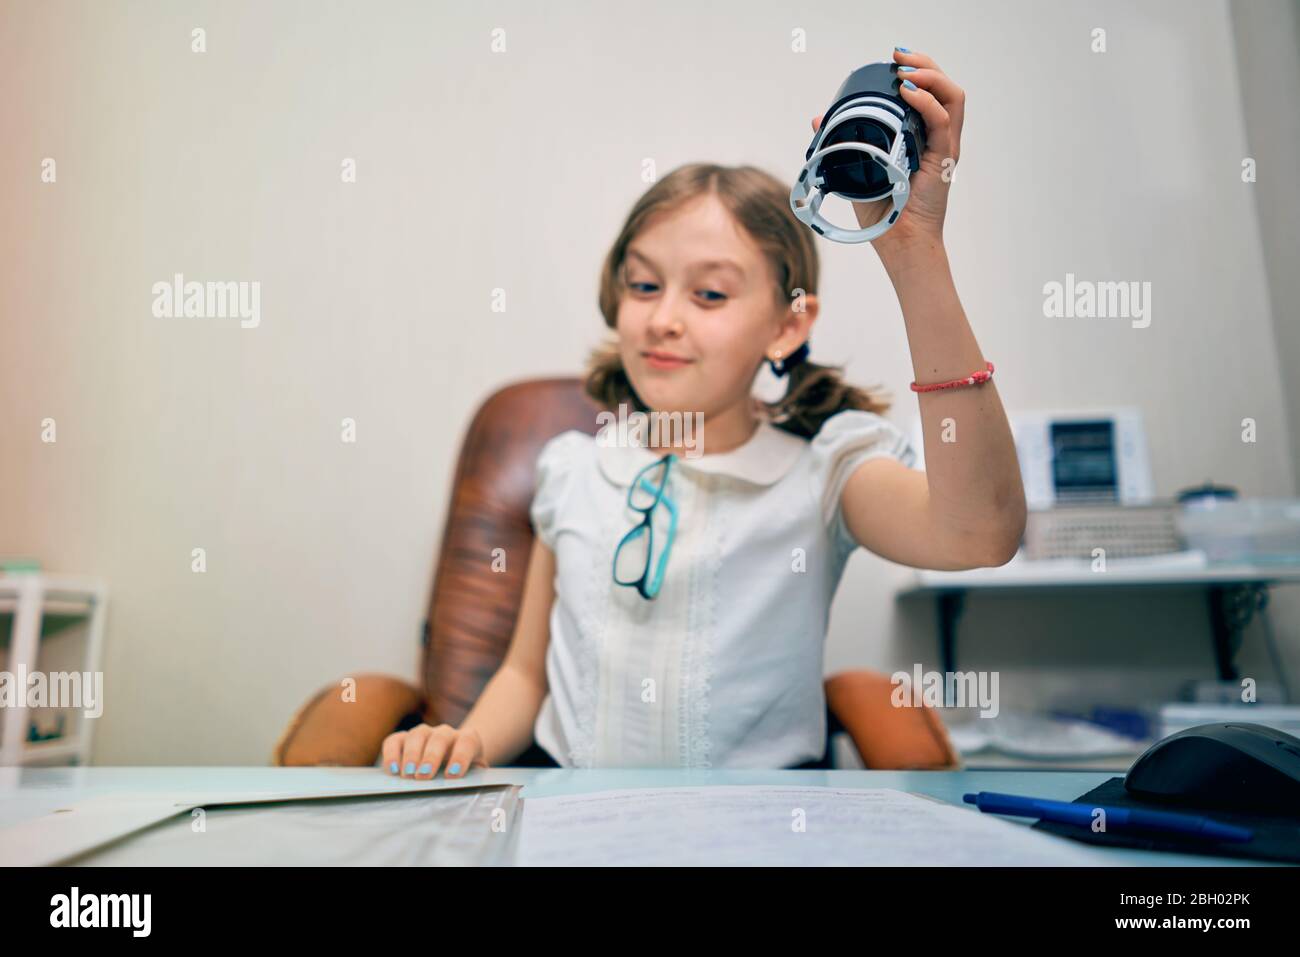 la bambina mette un timbro sui documenti Foto Stock